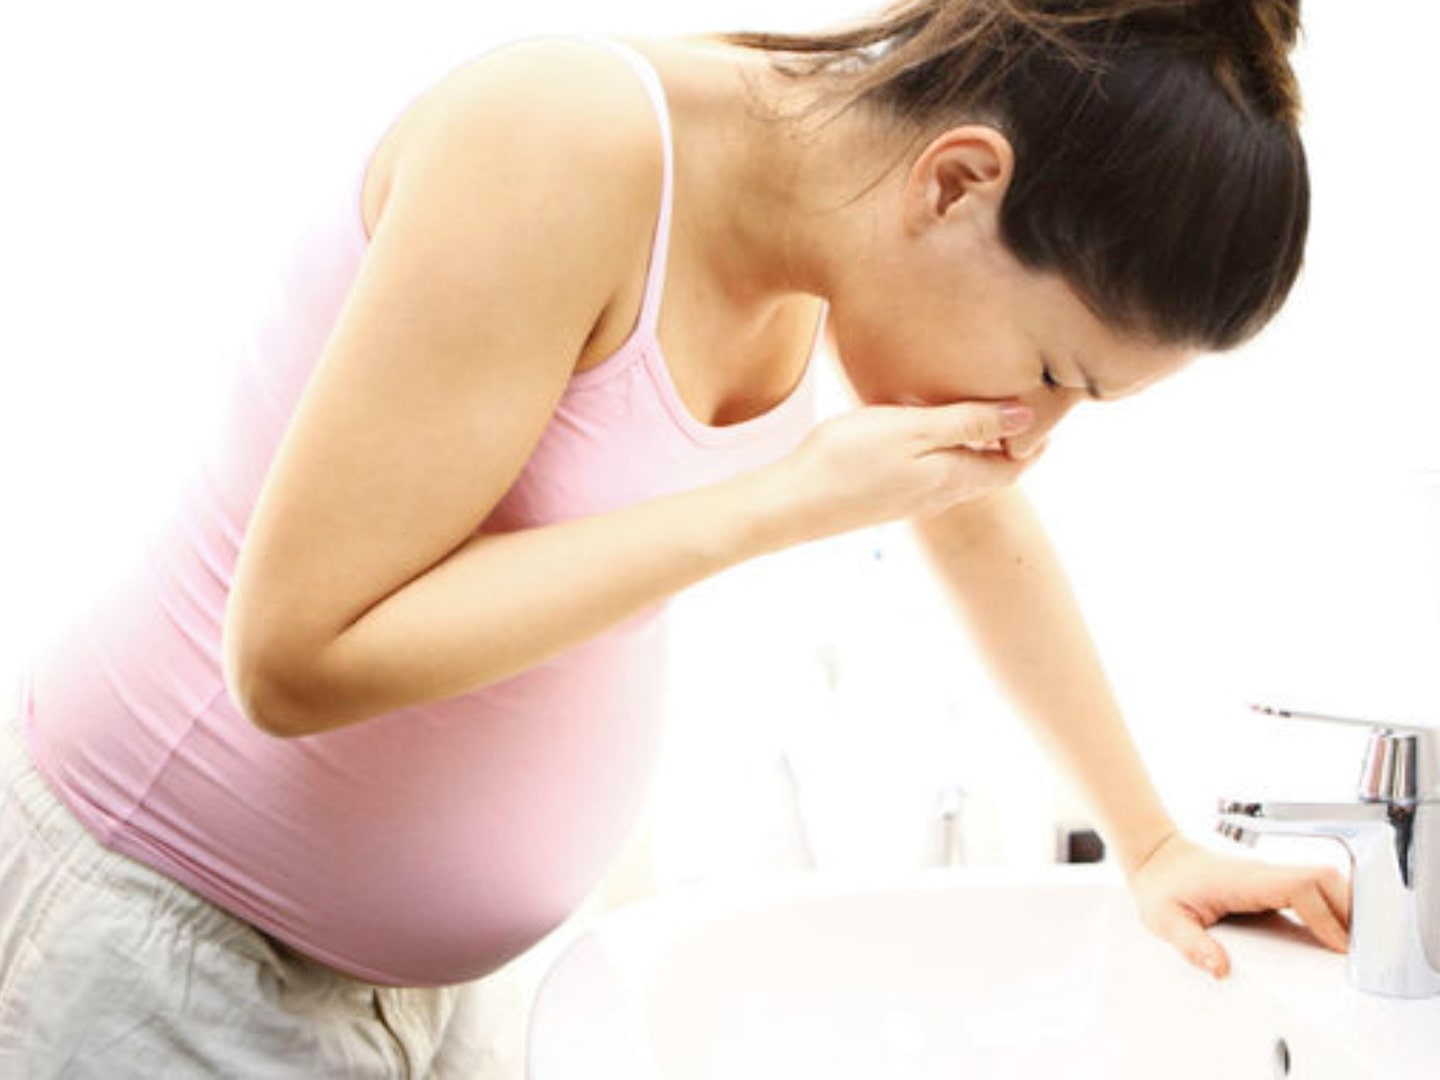 Сучасні аспекти оптимальної терапевтичної стратегії надмірного блювання вагітних